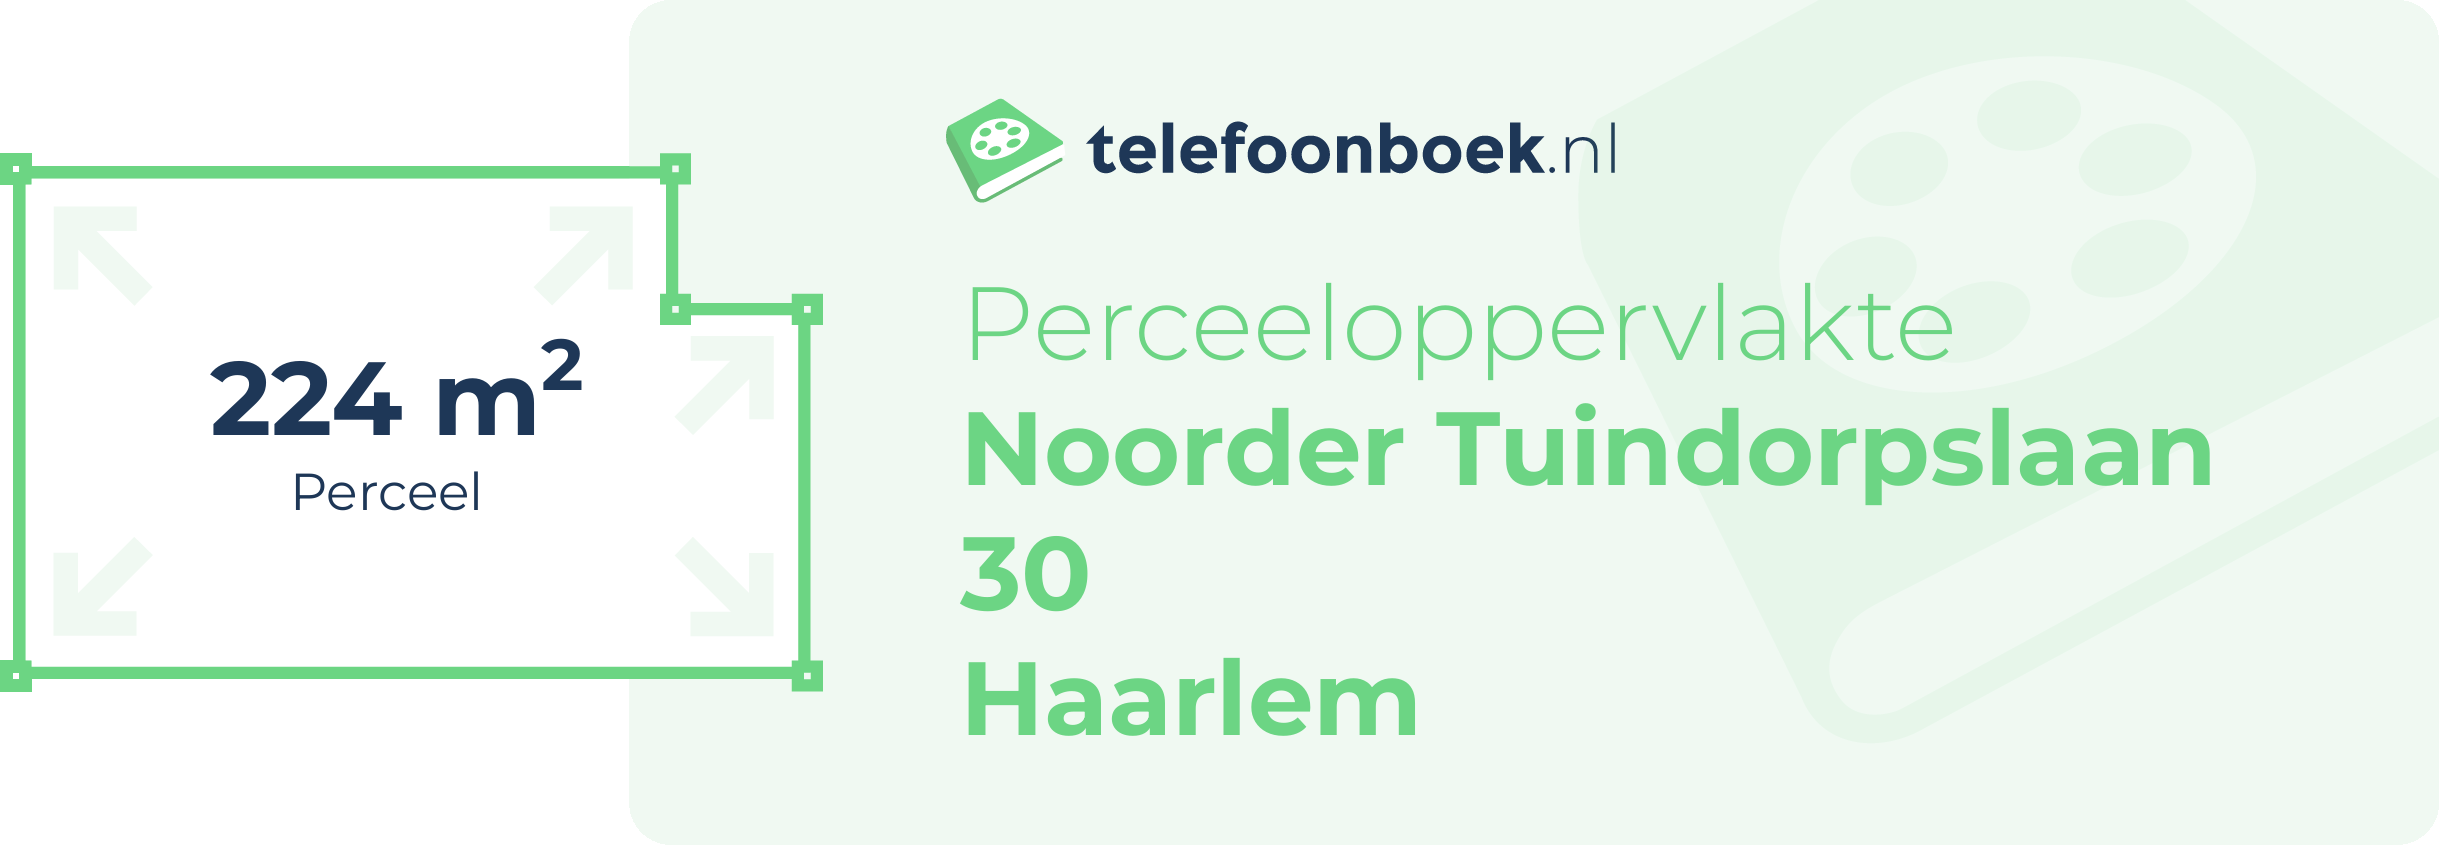 Perceeloppervlakte Noorder Tuindorpslaan 30 Haarlem